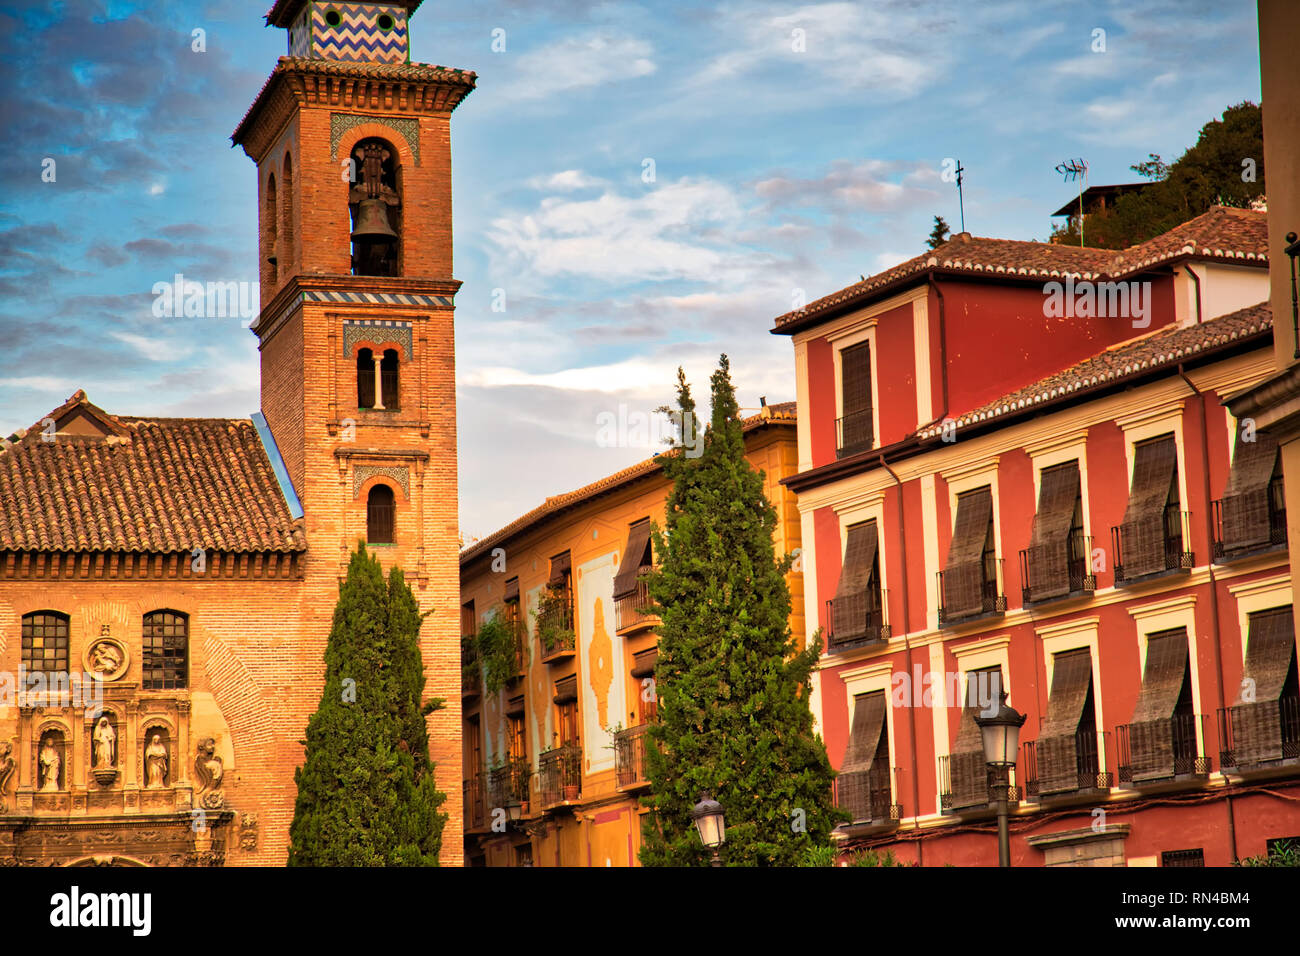 Granada streets in a historic city center Stock Photo